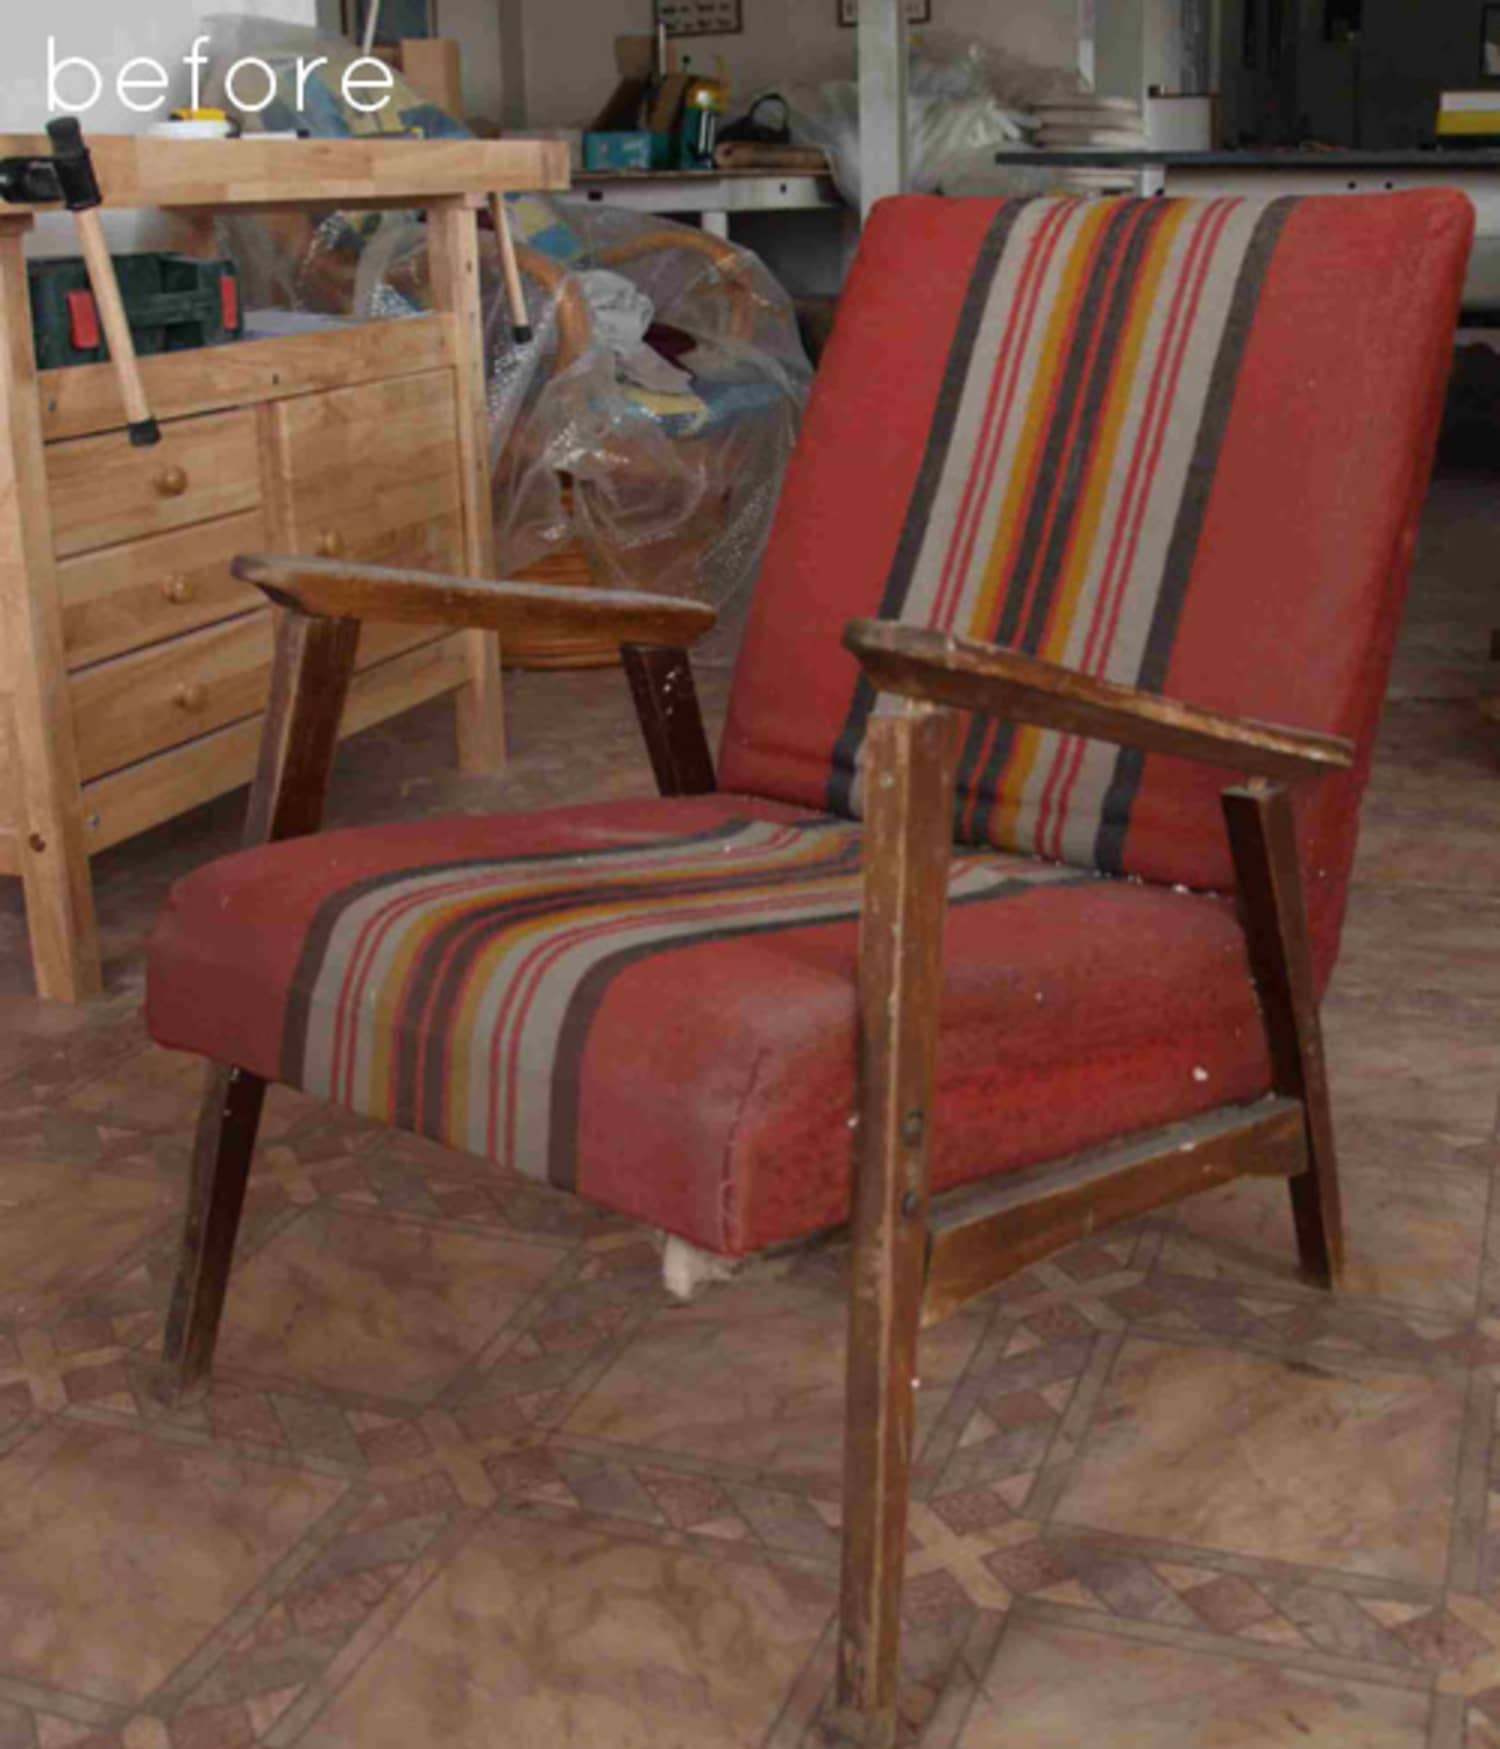 реставрация кресла качалки с деревянными подлокотниками своими руками